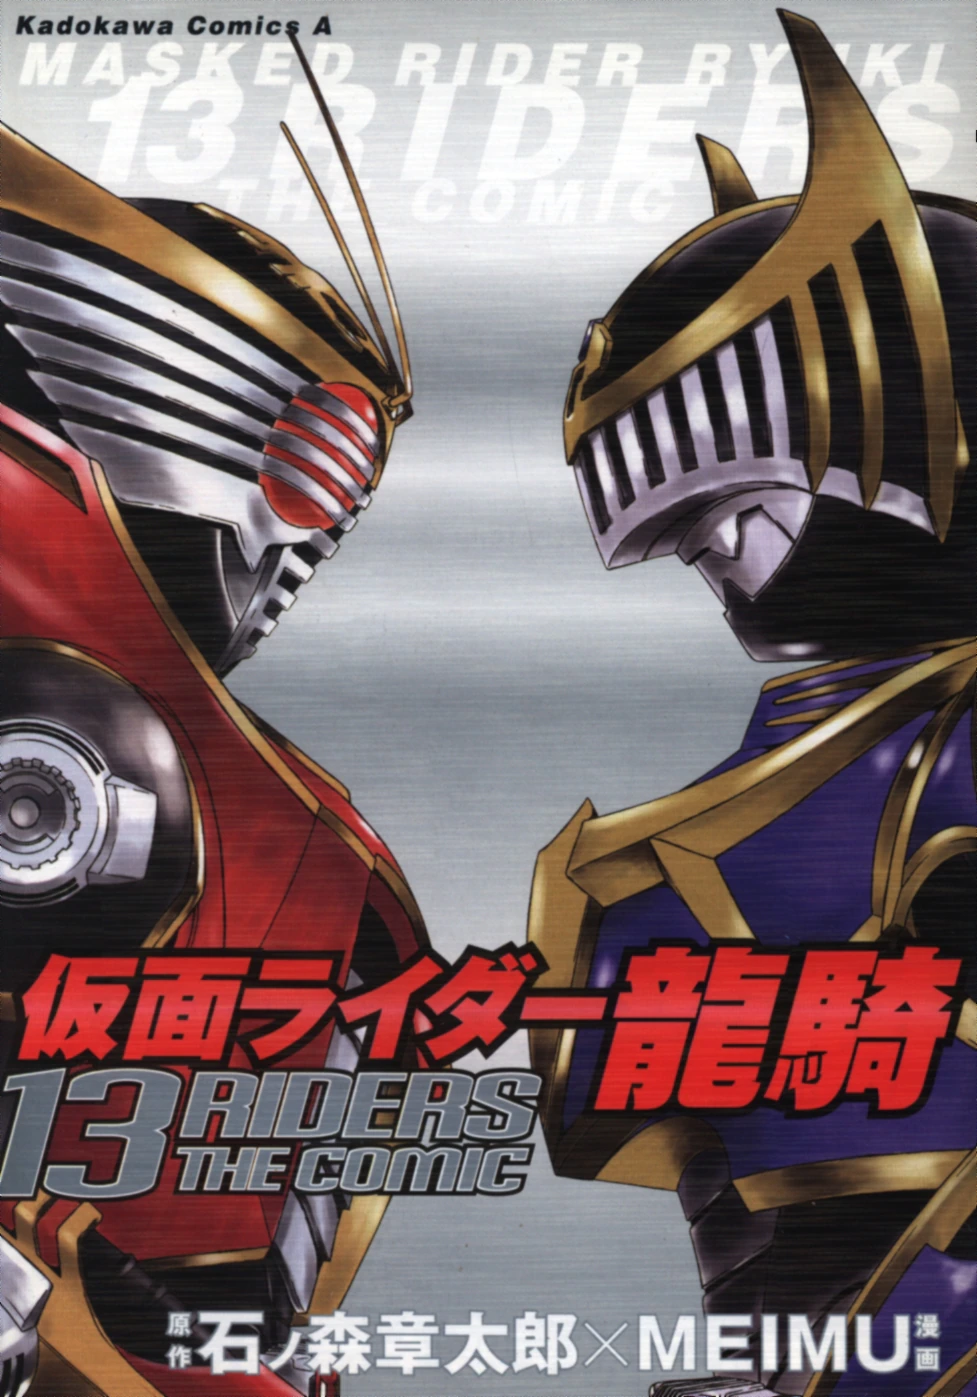 Masked Rider Ryuuki - 13 Riders the Comic